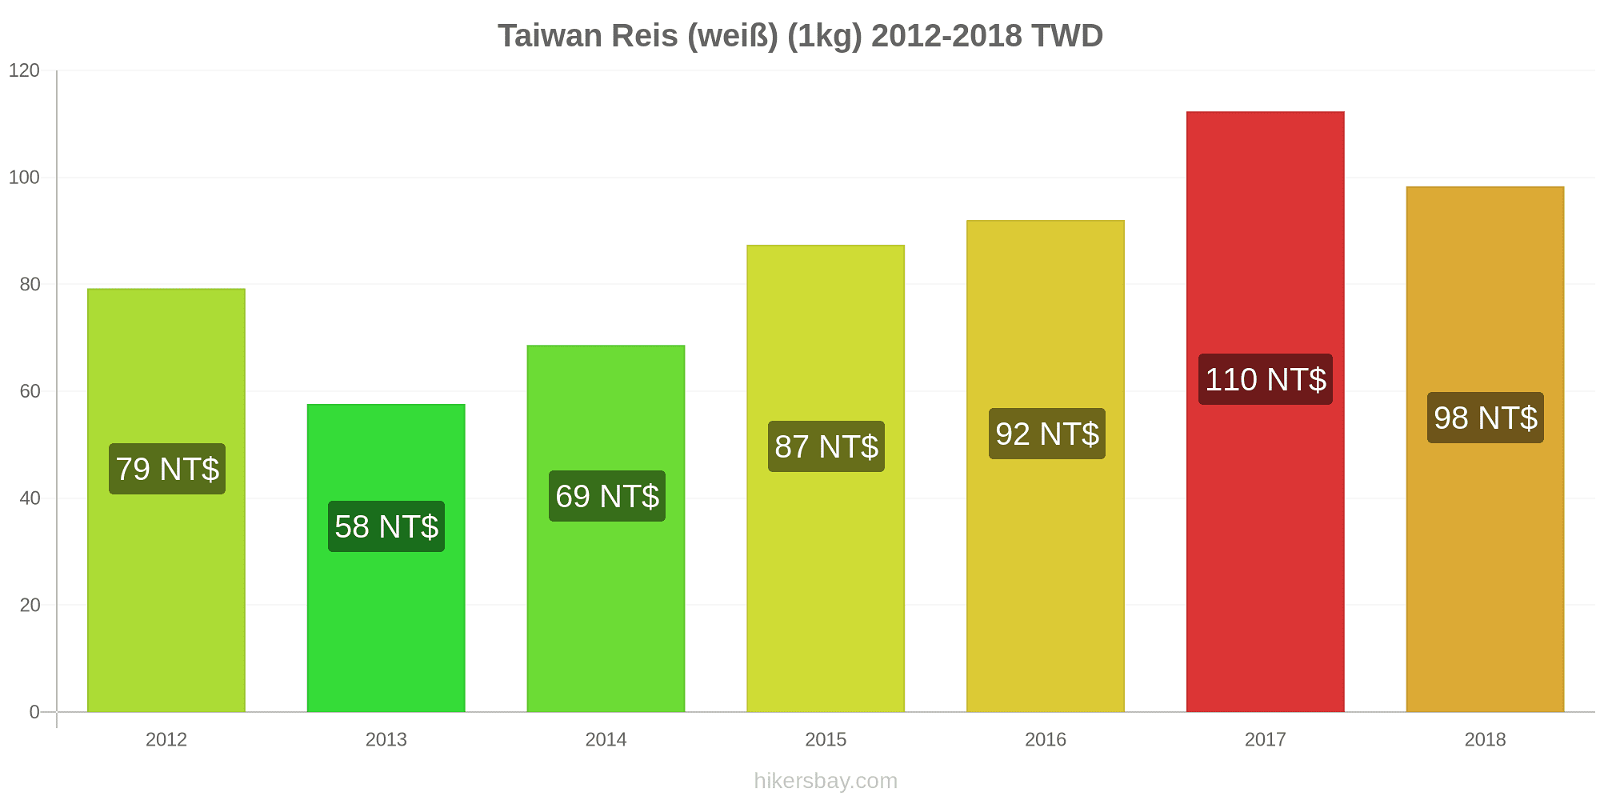 Taiwan Preisänderungen Reis (weiß) (1kg) hikersbay.com